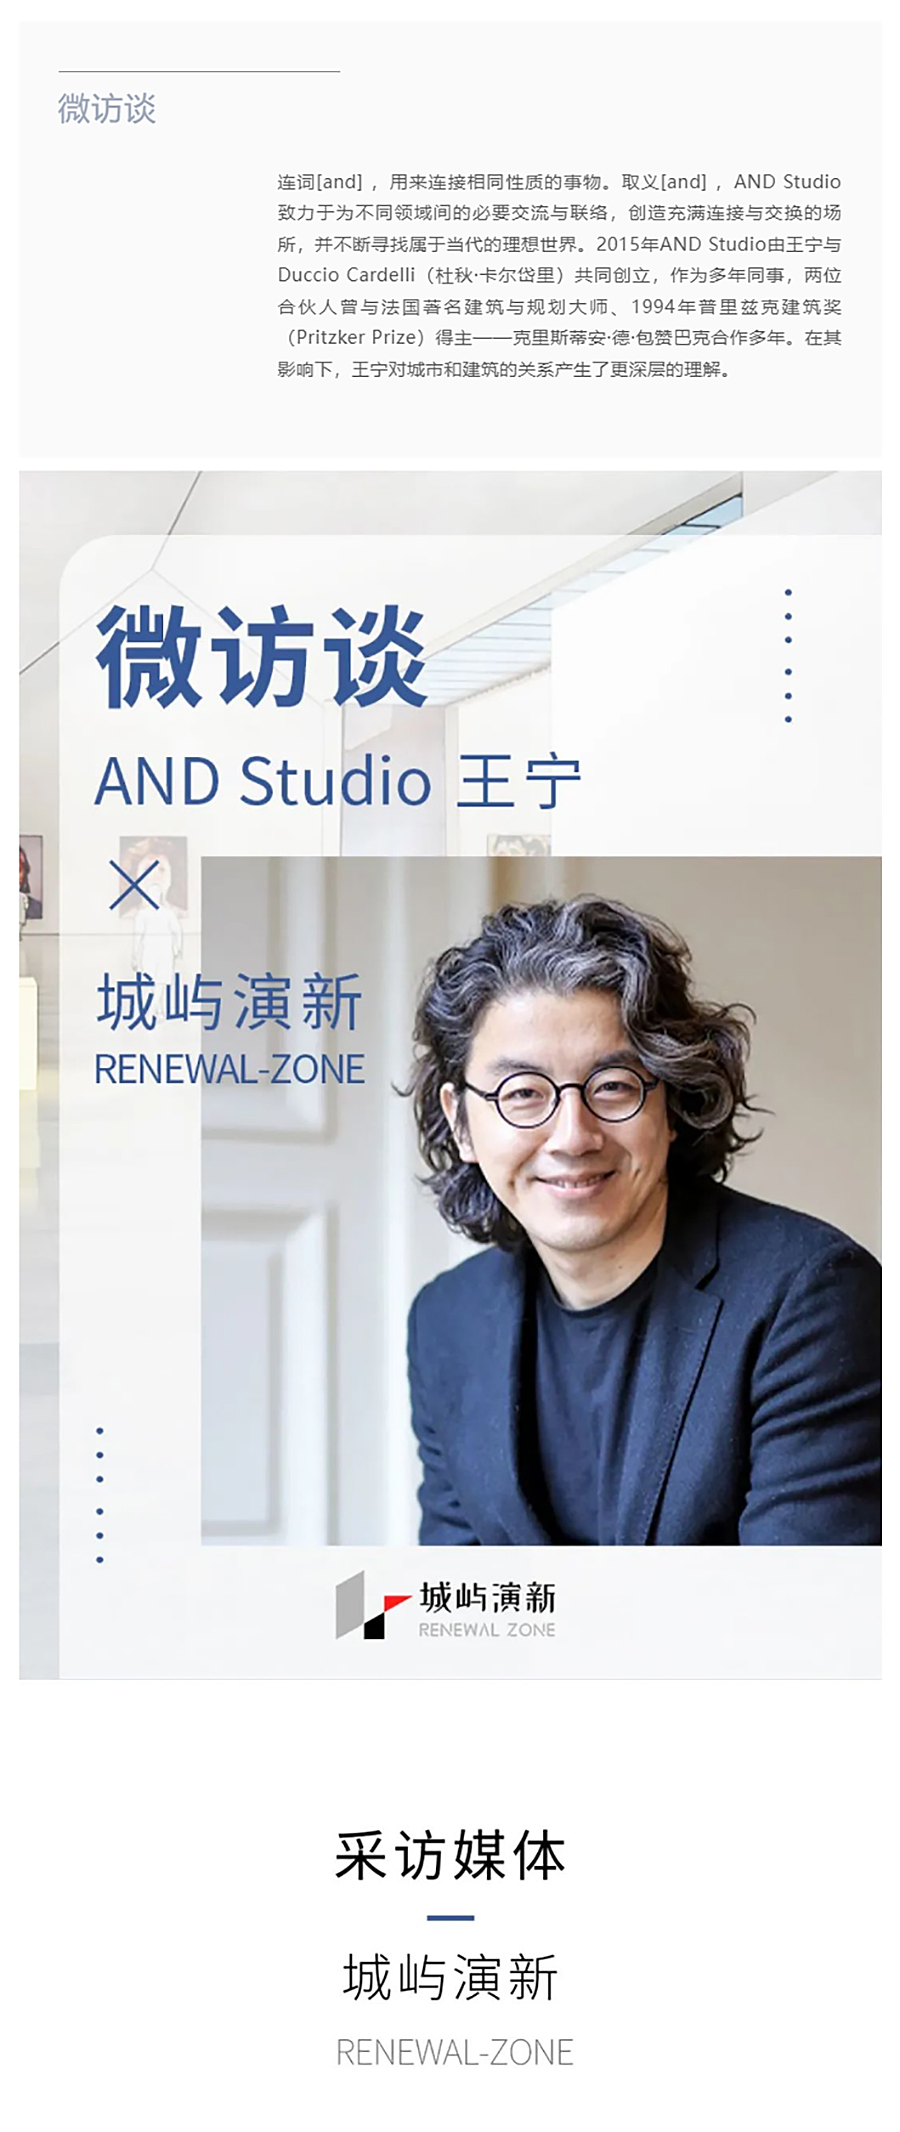 Renewal-Zone：AND-Studio-王宁-_-用作品的连接，推演属于当代的理想世界_0001_图层-2 拷贝.jpg